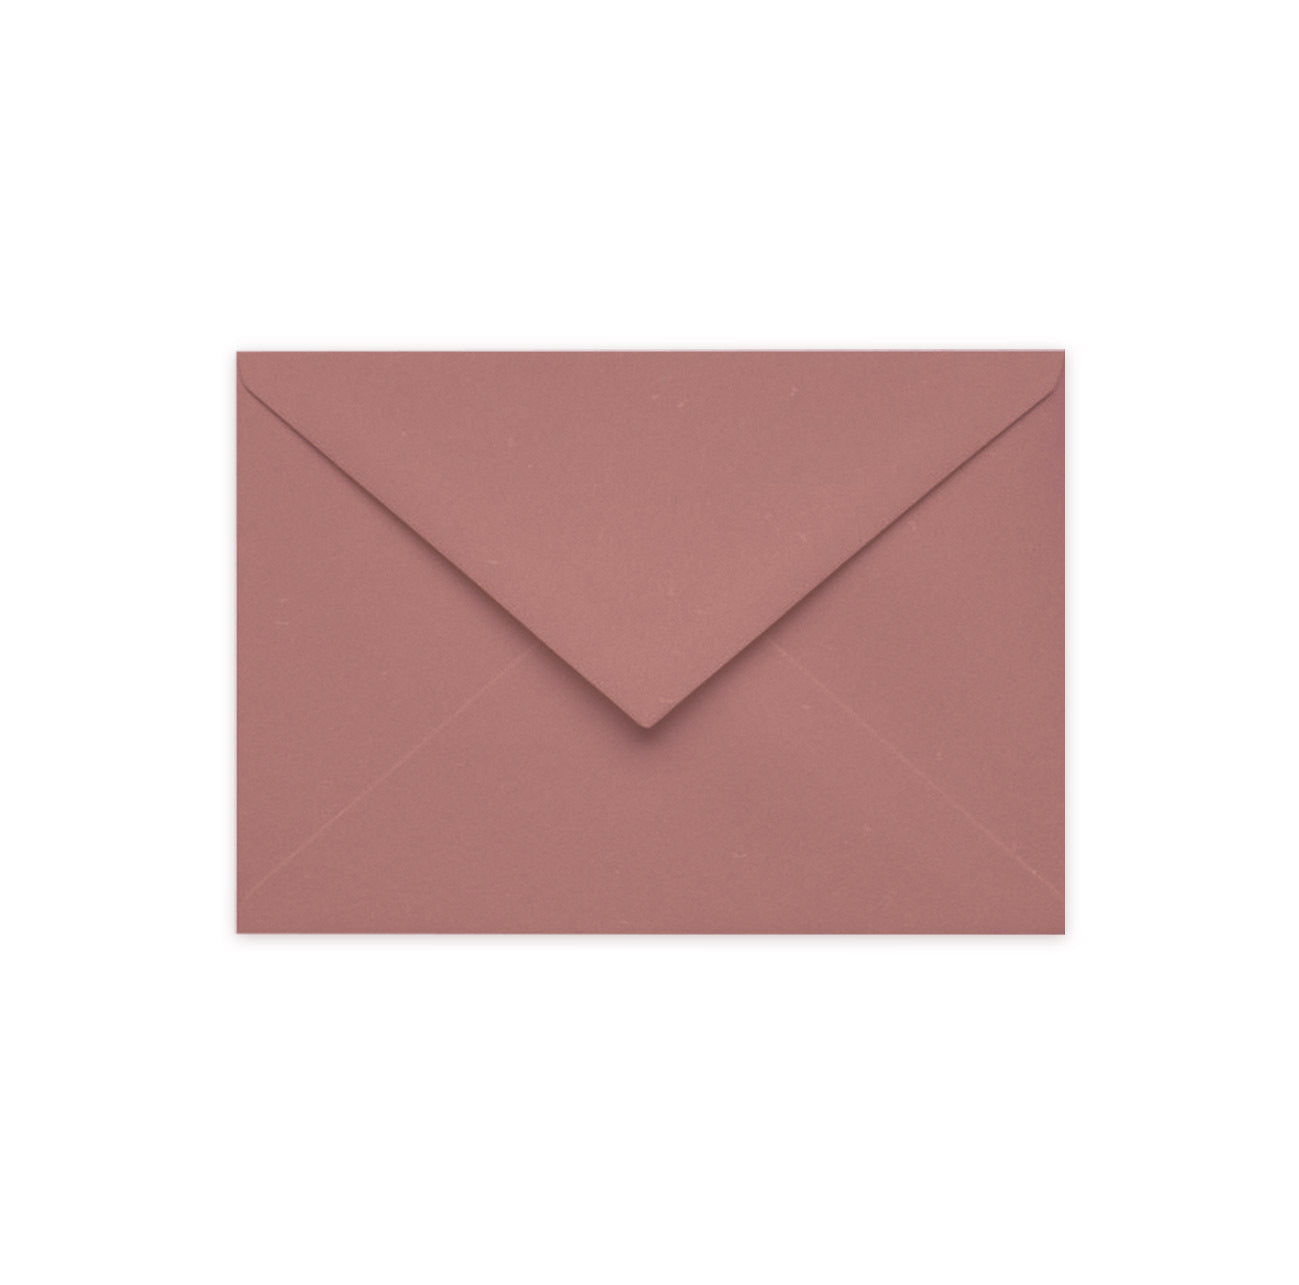 Envelope, wild rose